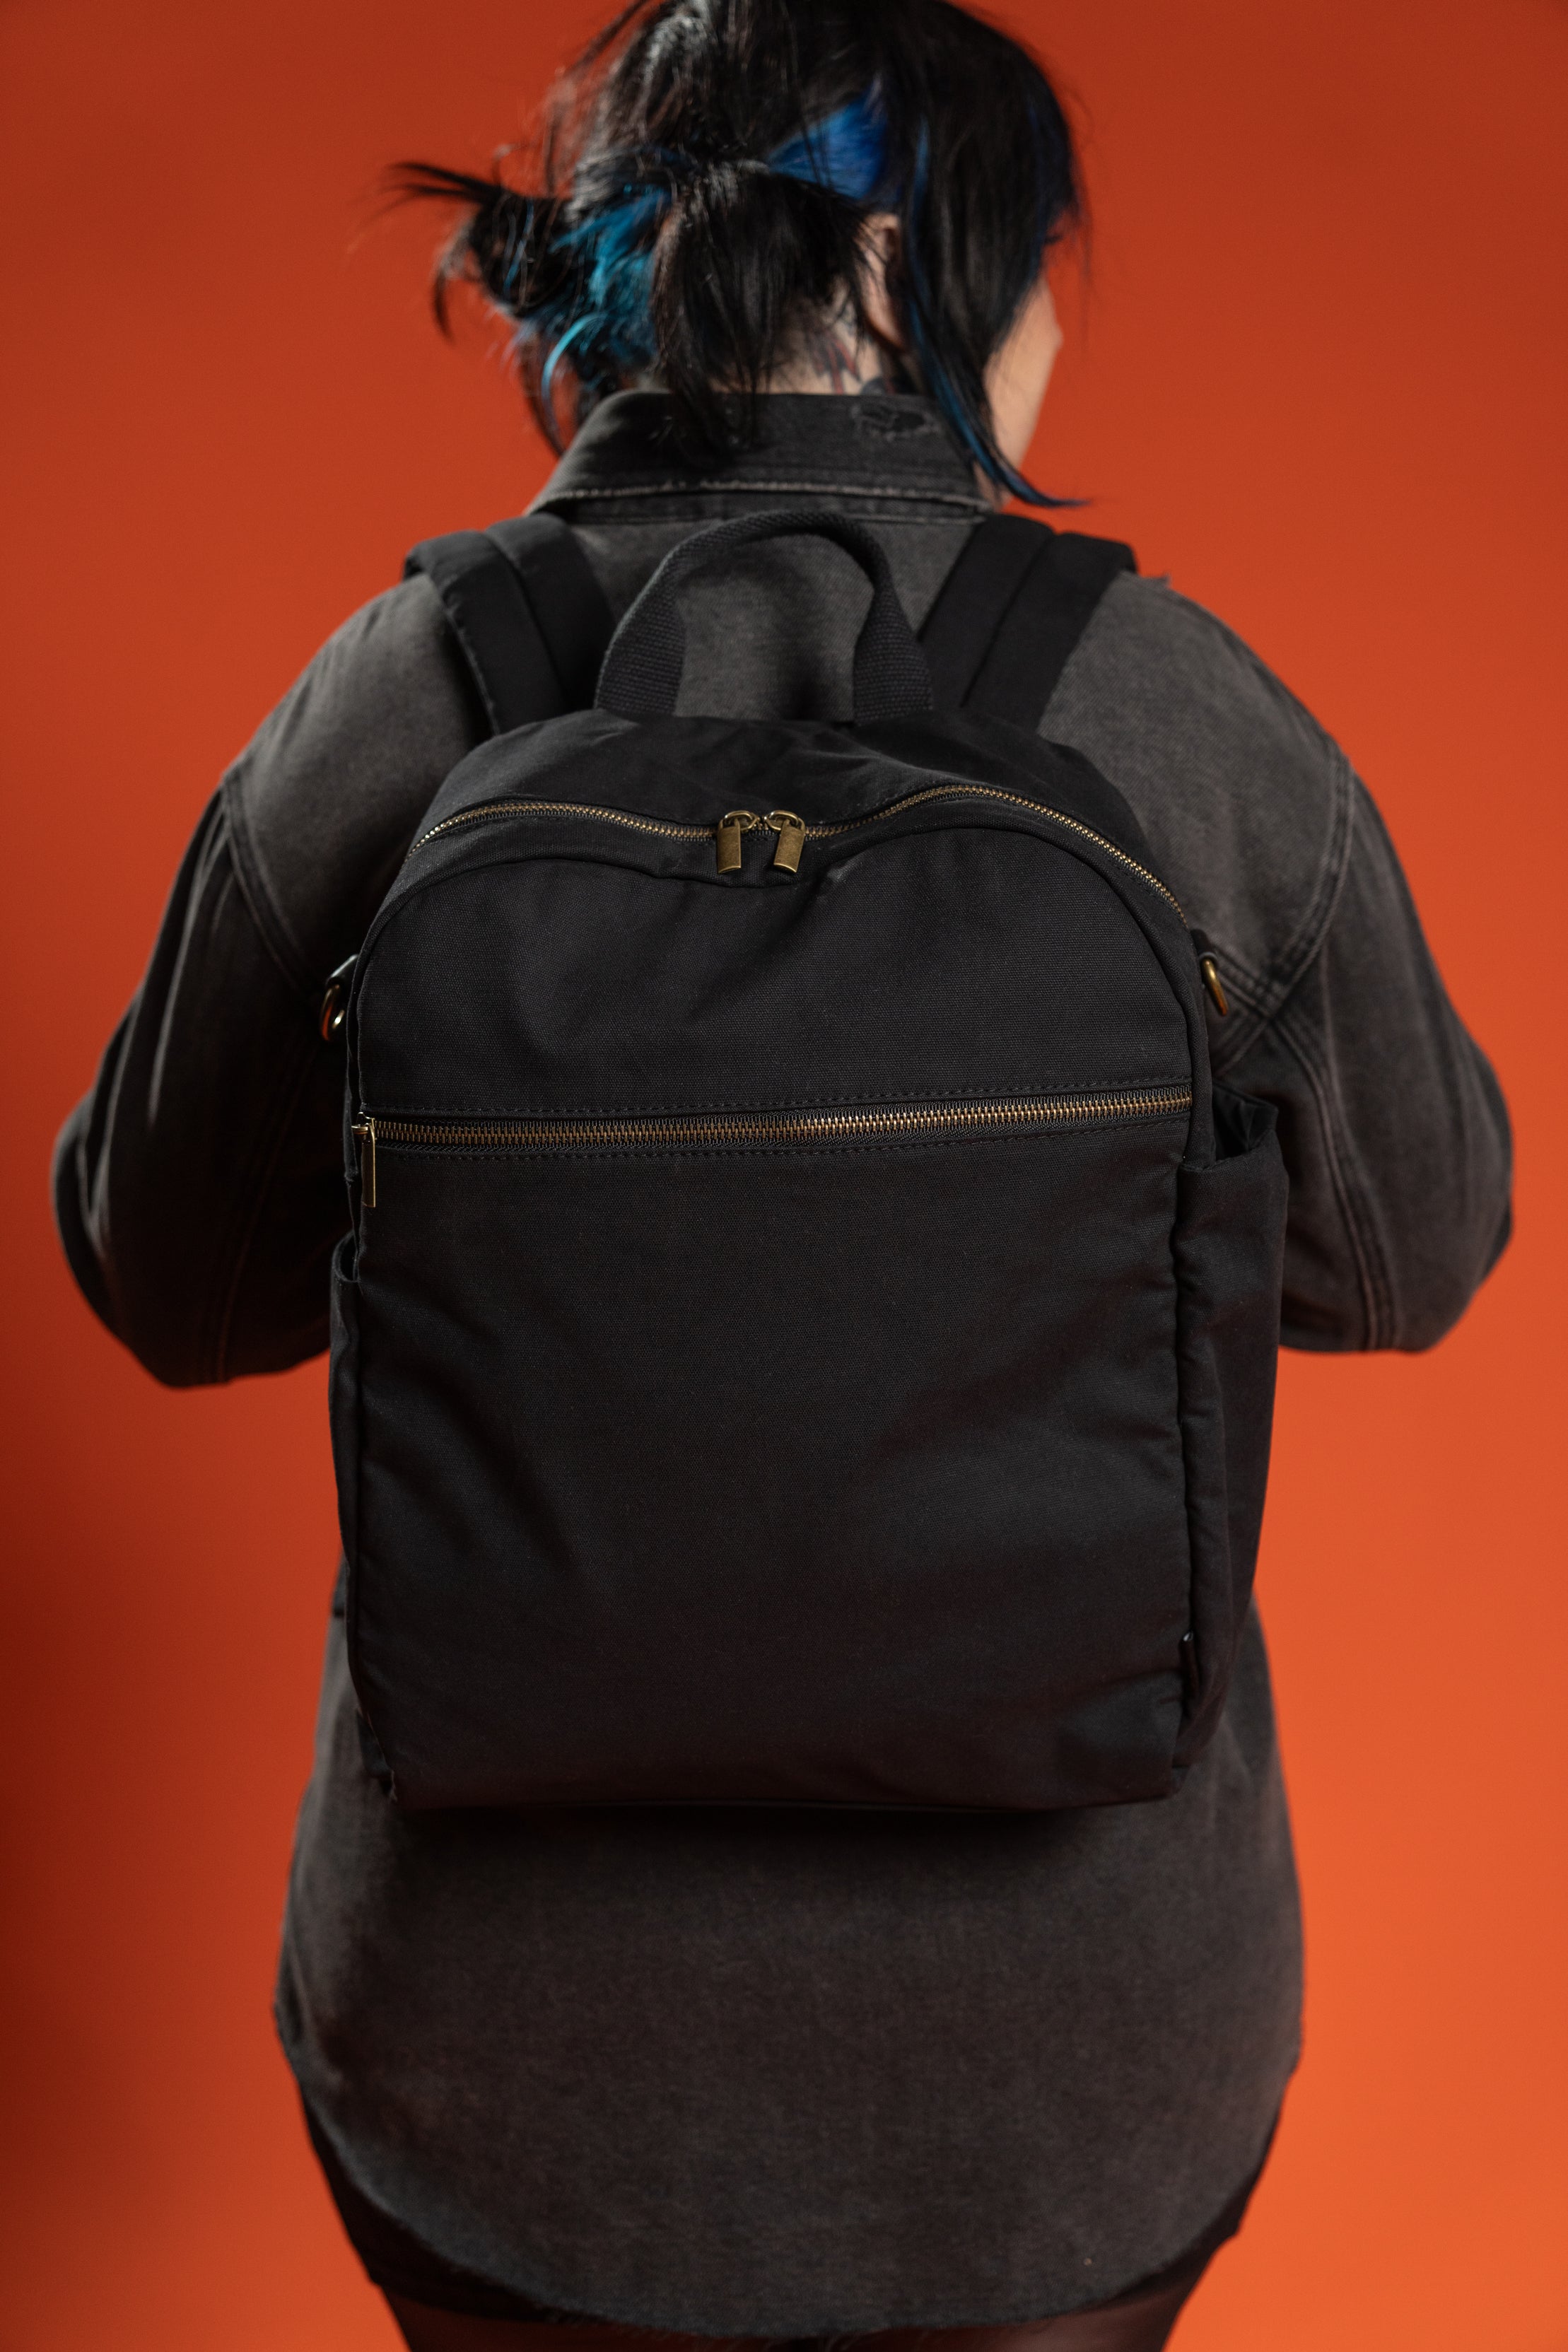 The Dakota Backpack